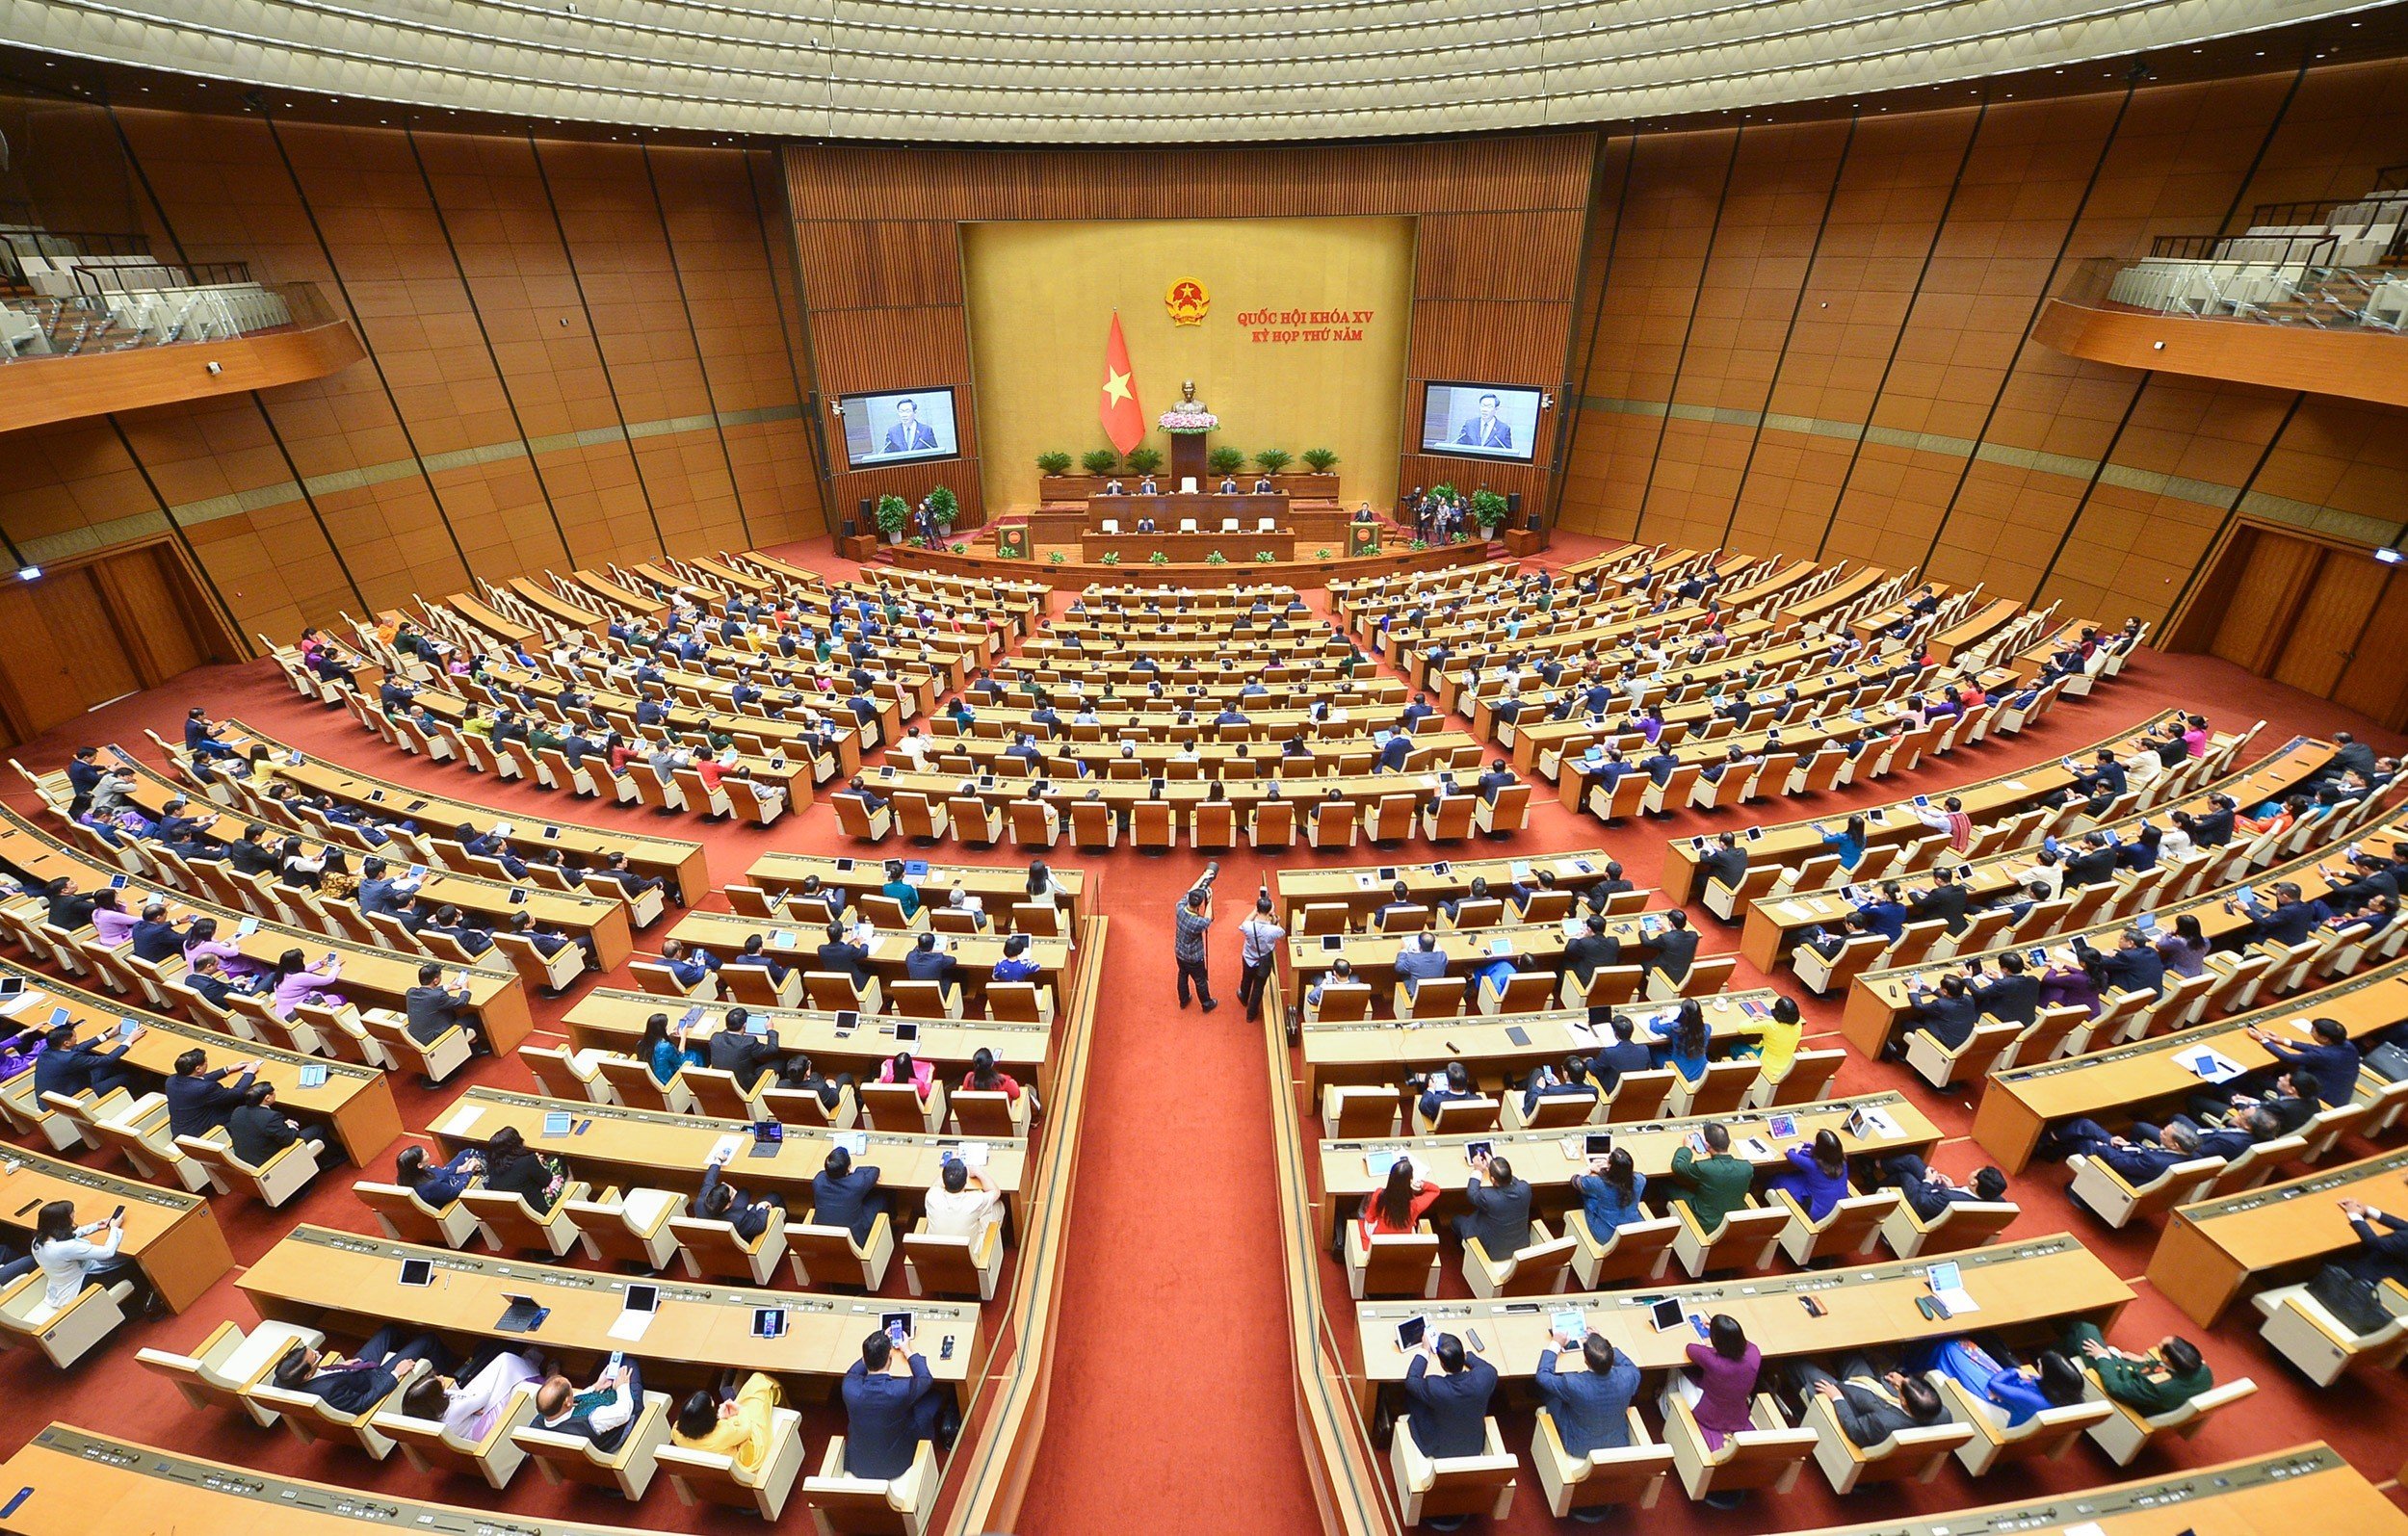 Chương trình kỳ họp Quốc hội được quy định như thế nào?